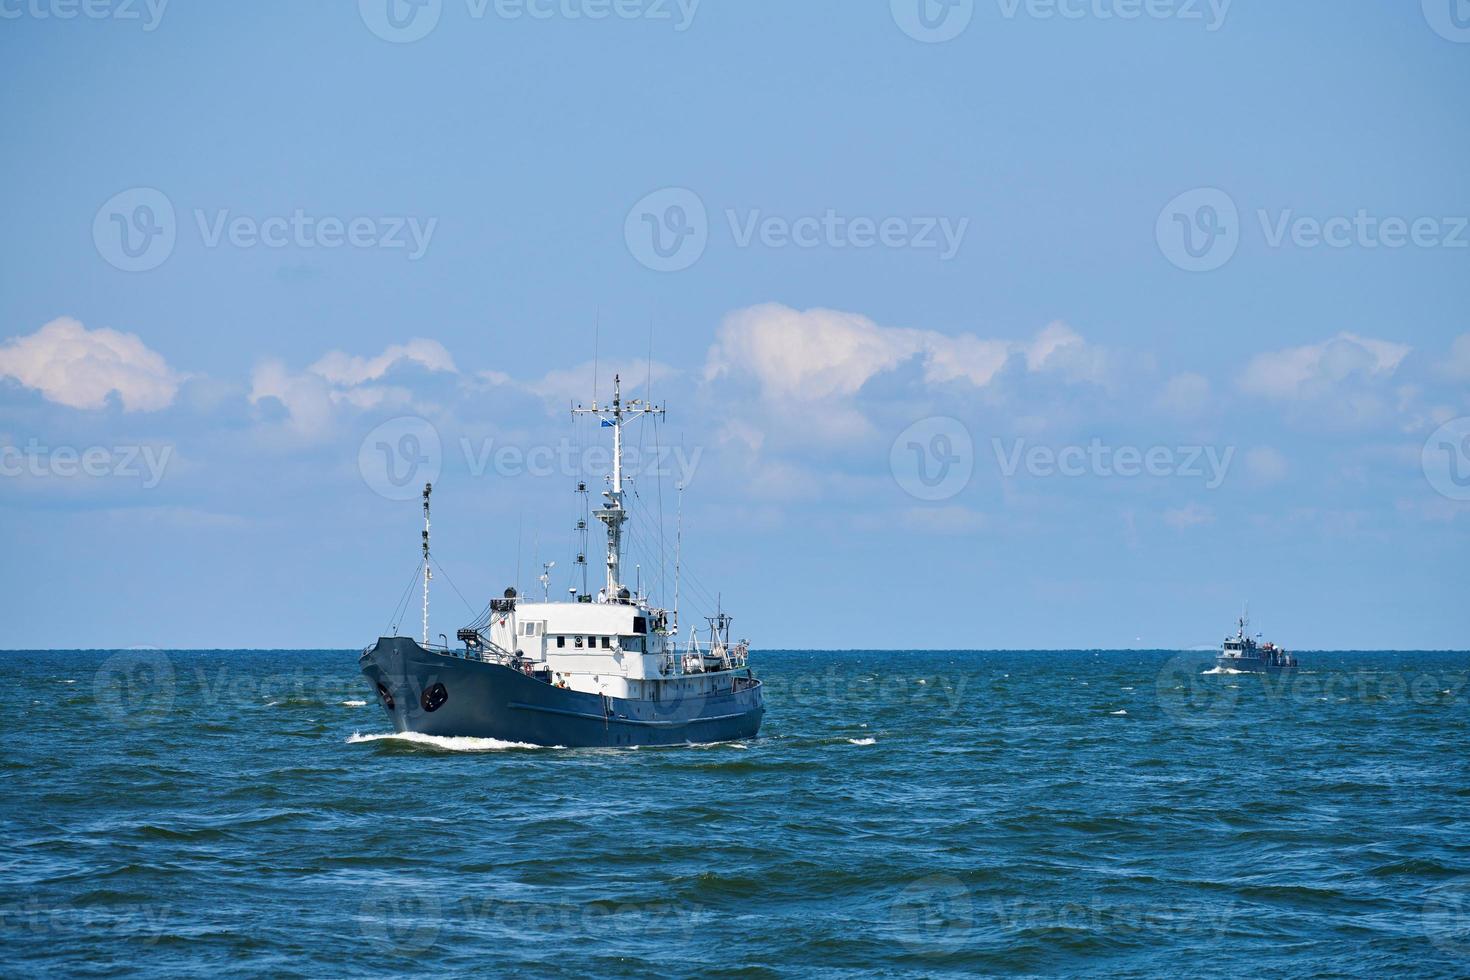 buque de inspección, buque de investigación, barco patrullero navegando en el mar báltico azul brillante, barco patrullero de la marina foto